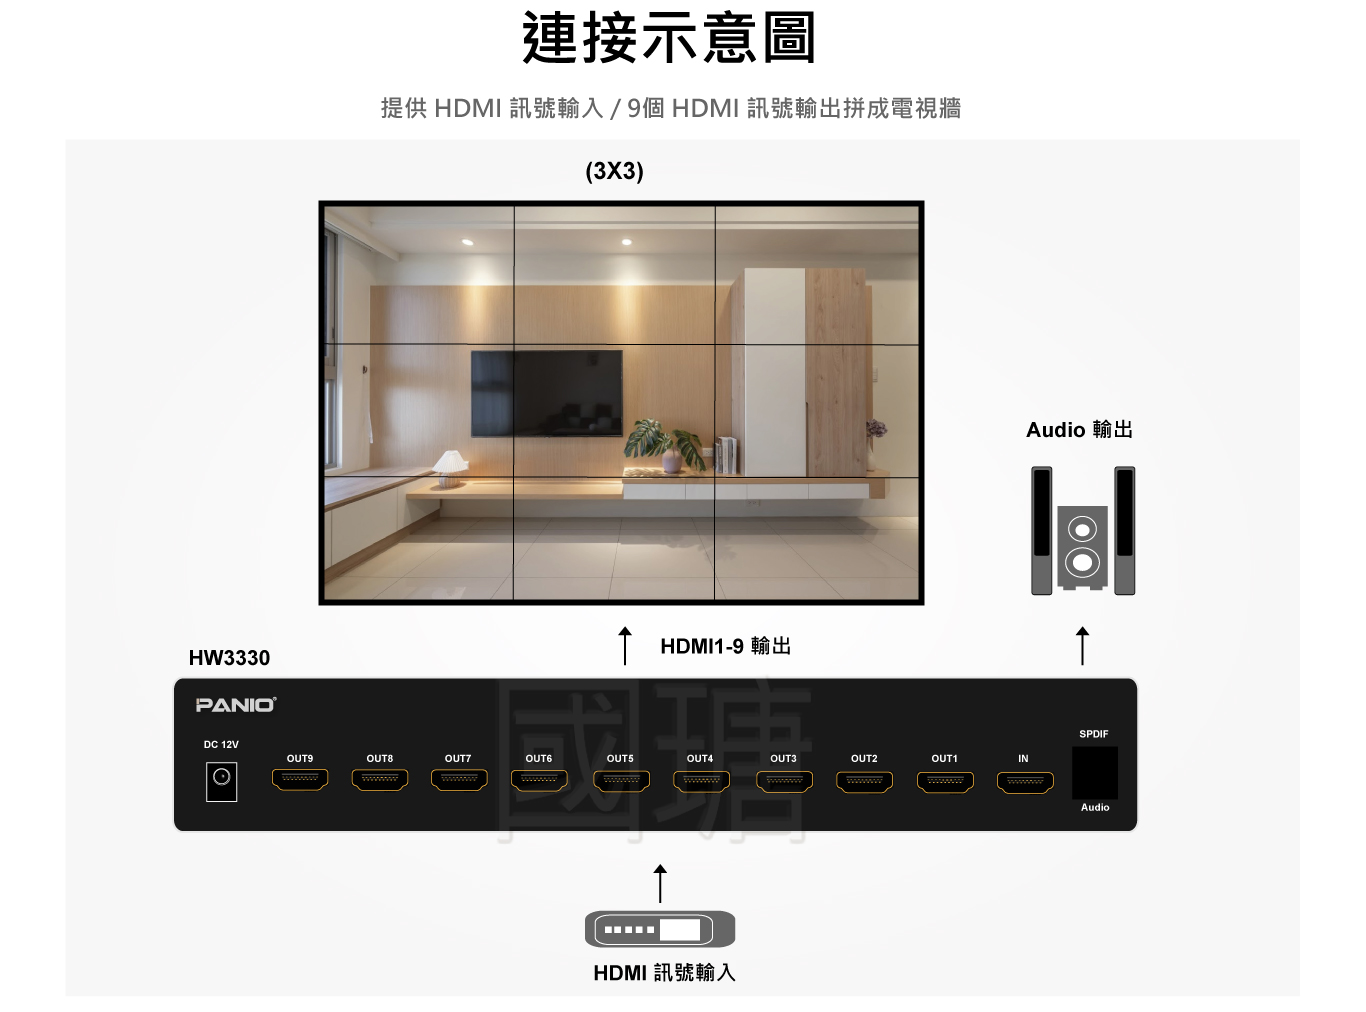 2021 4K60Hz HDMI2.0拼接電視牆, 支援9電視及SPDIF數位音訊輸出 | 台灣PANIO國瑭